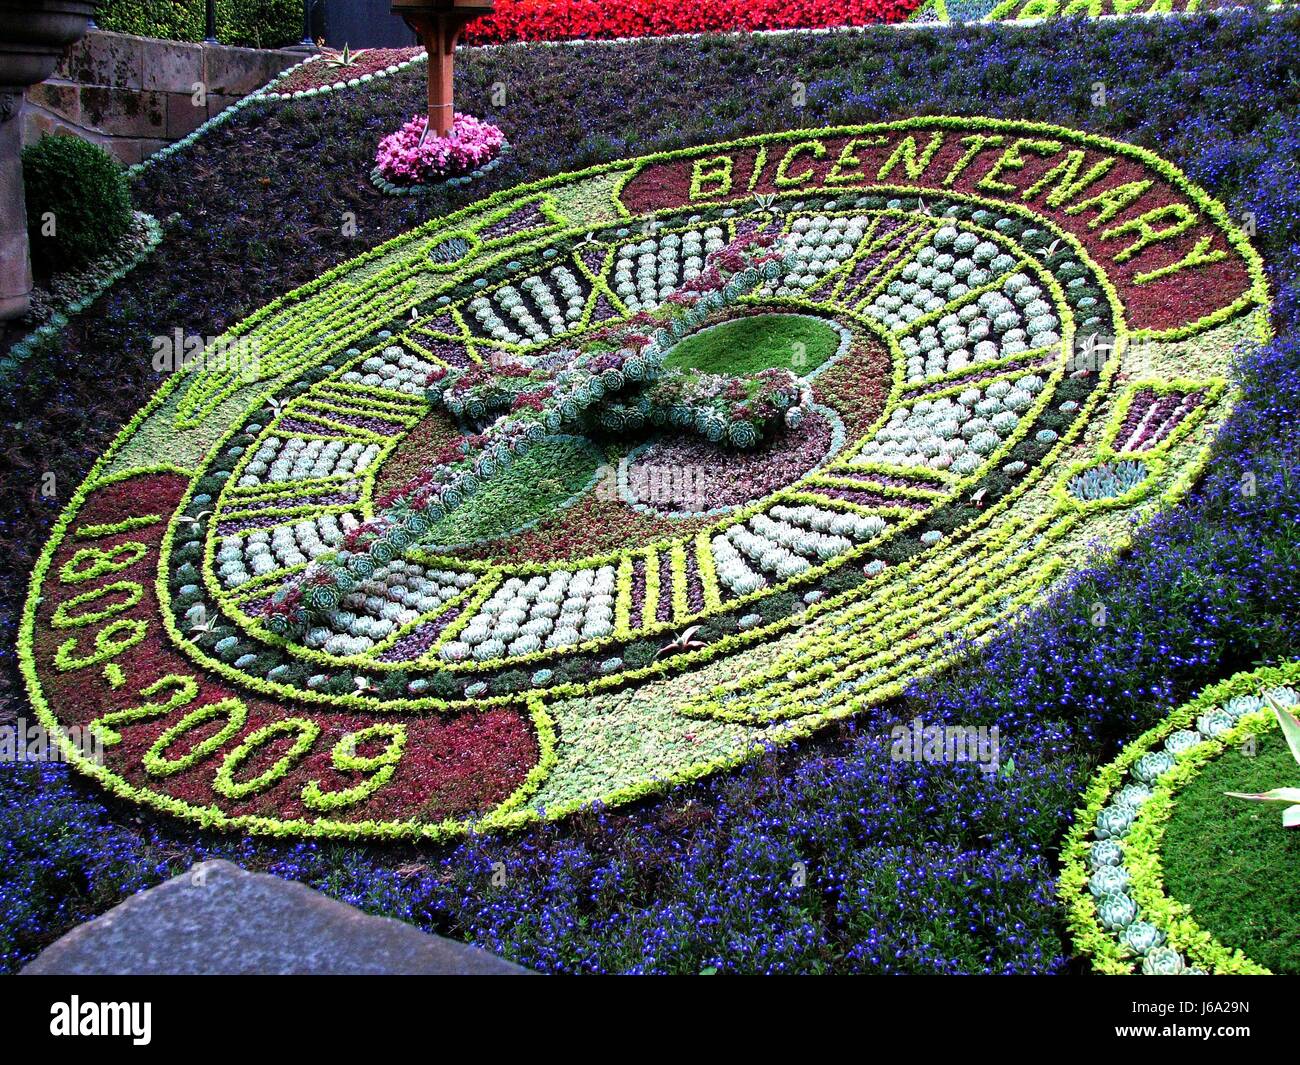 Parco dei Fiori Piante Fiori Scozia edinburgh park fiore fiori impianto Scozia Scotland Foto Stock